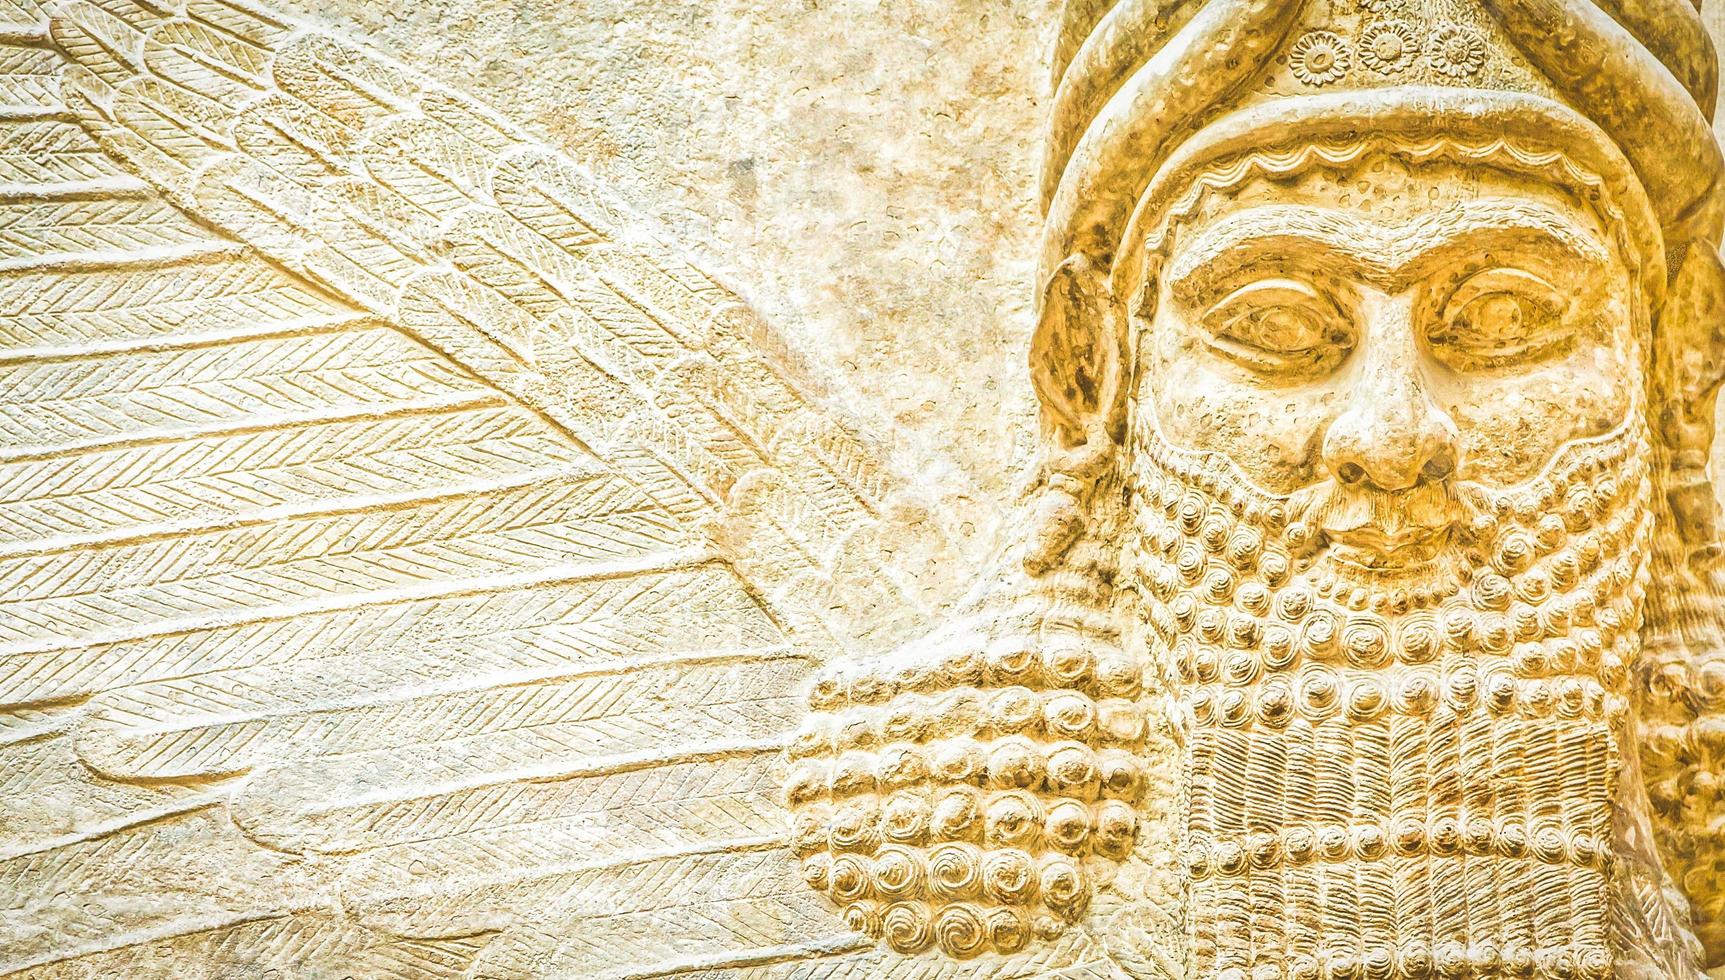 el arte mesopotámico estaba destinado a servir como una forma de glorificar a los gobernantes poderosos y su conexión con la divinidad foto